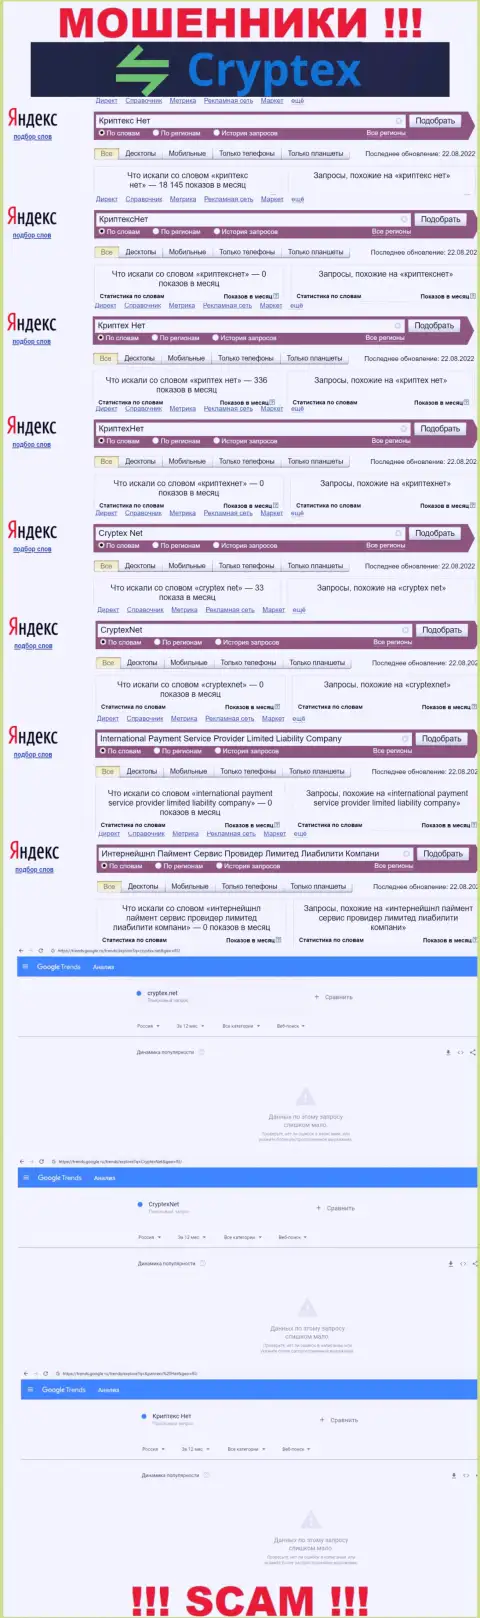 Скриншот итогов online-запросов по незаконно действующей организации Cryptex Net